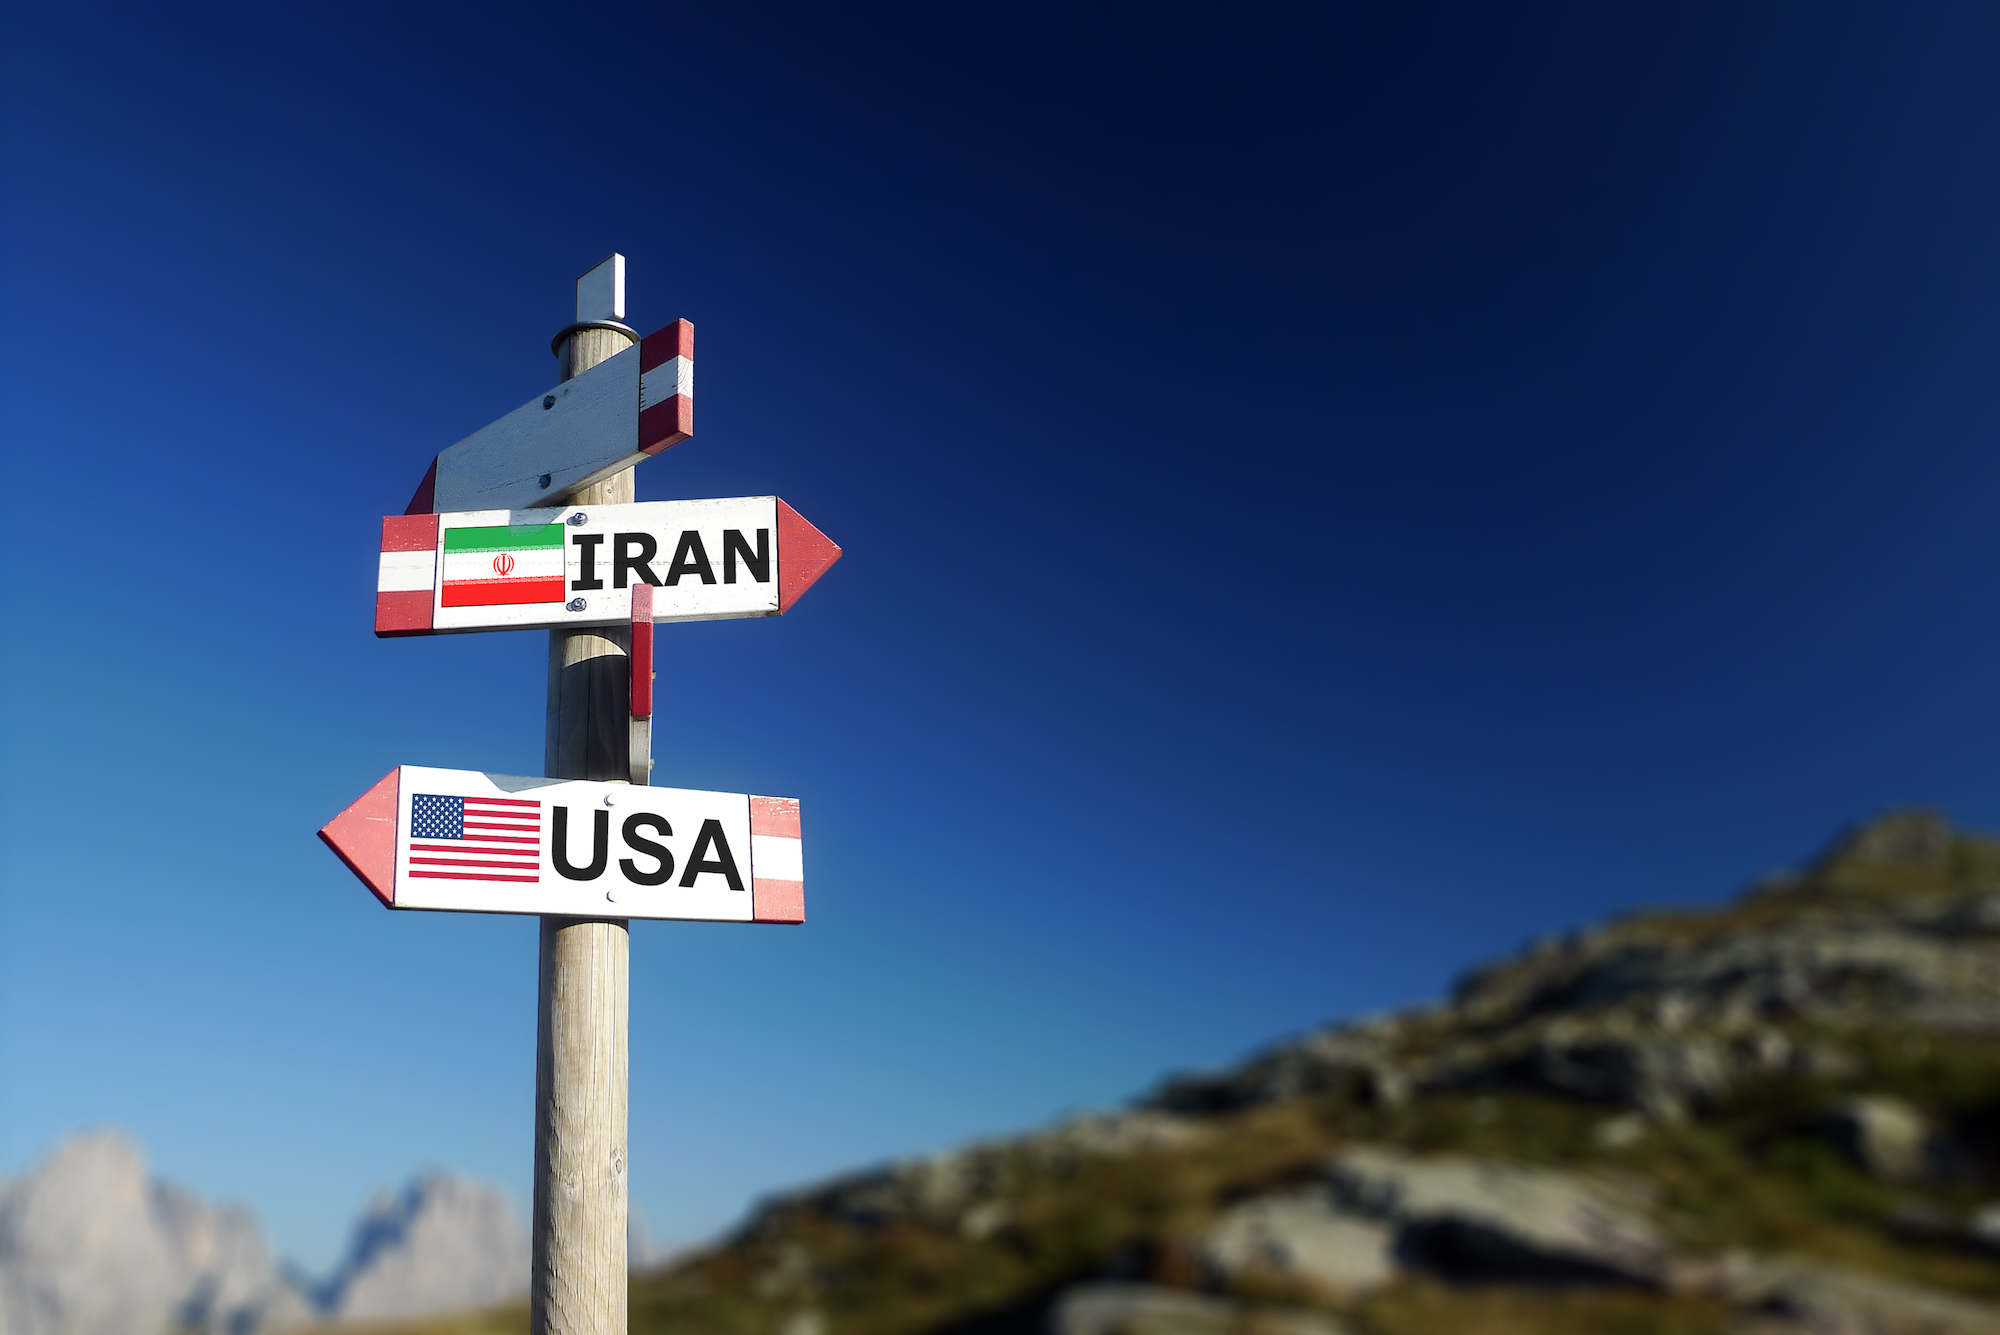 تأثير محدود: تداعيات العقوبات الأمريكية على النظام الإيراني